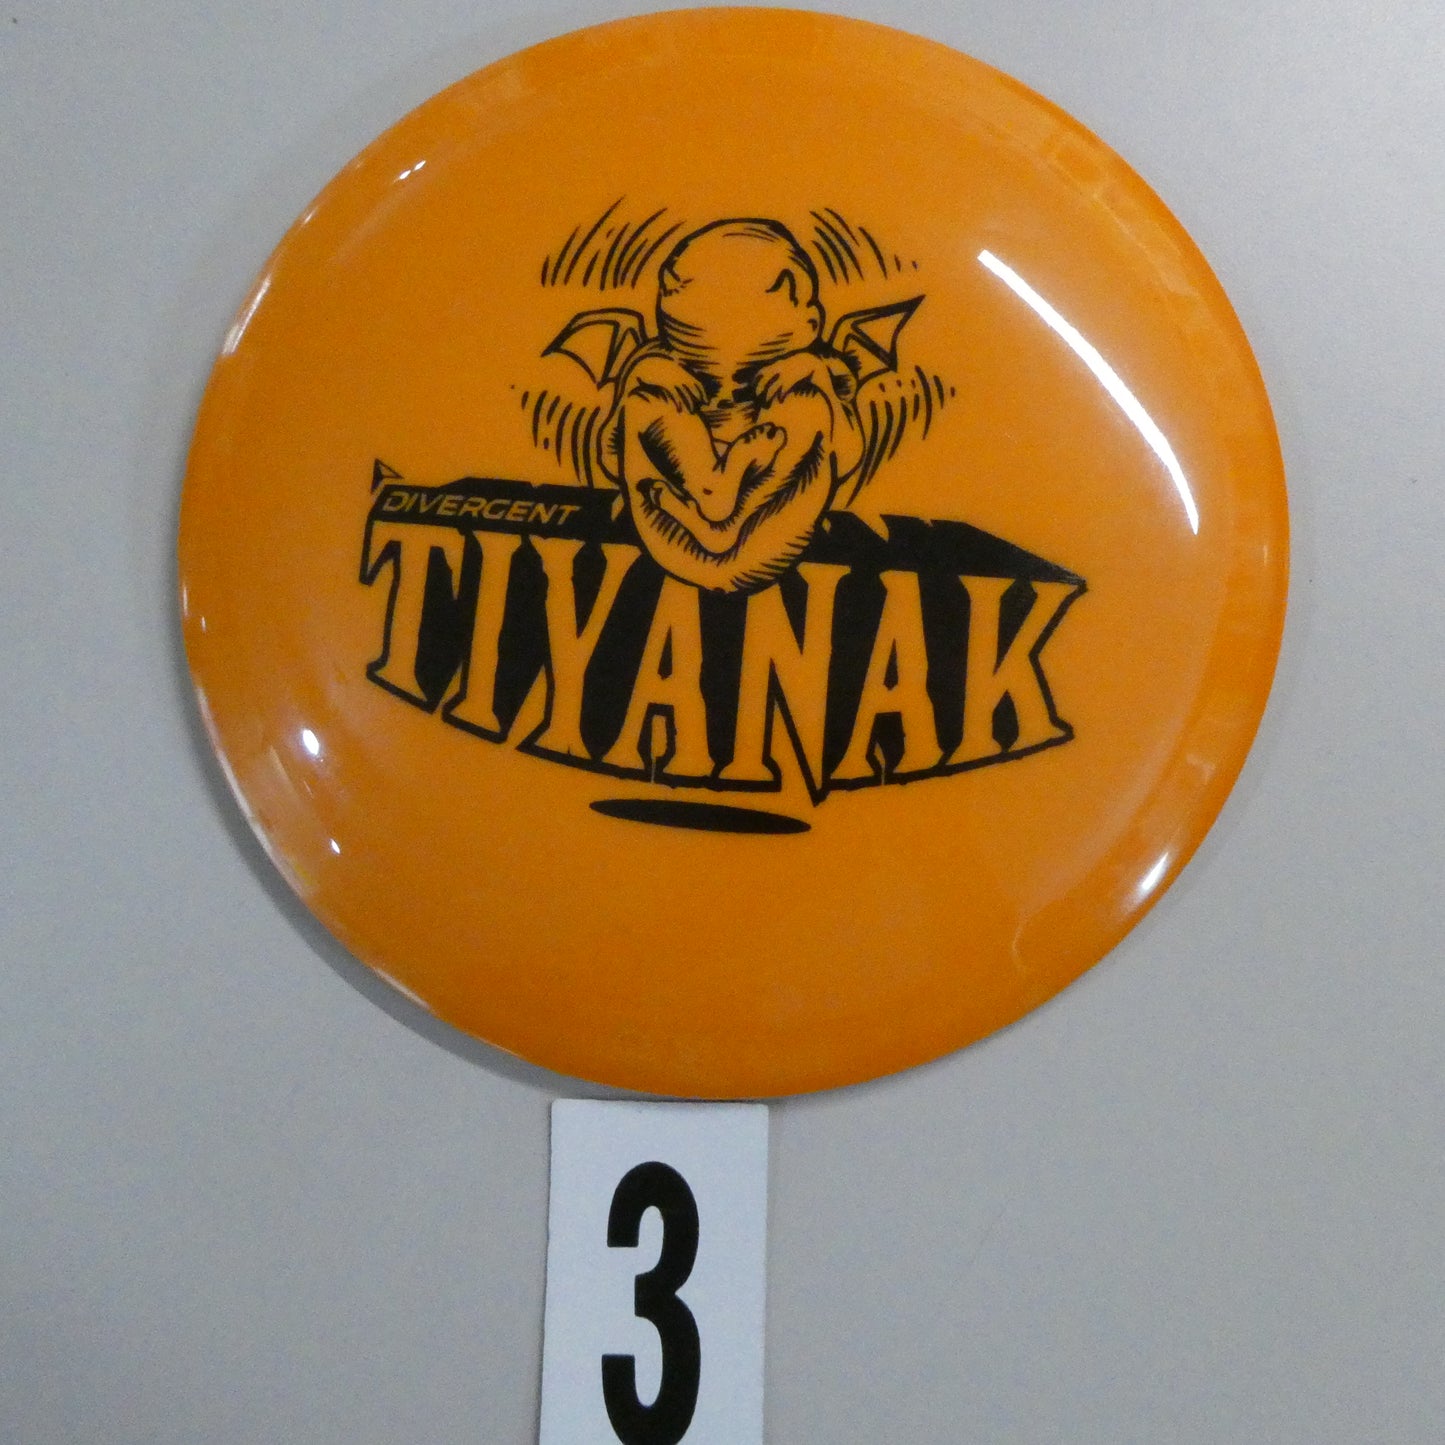 Max Grip Tiyanak by Divergent Discs